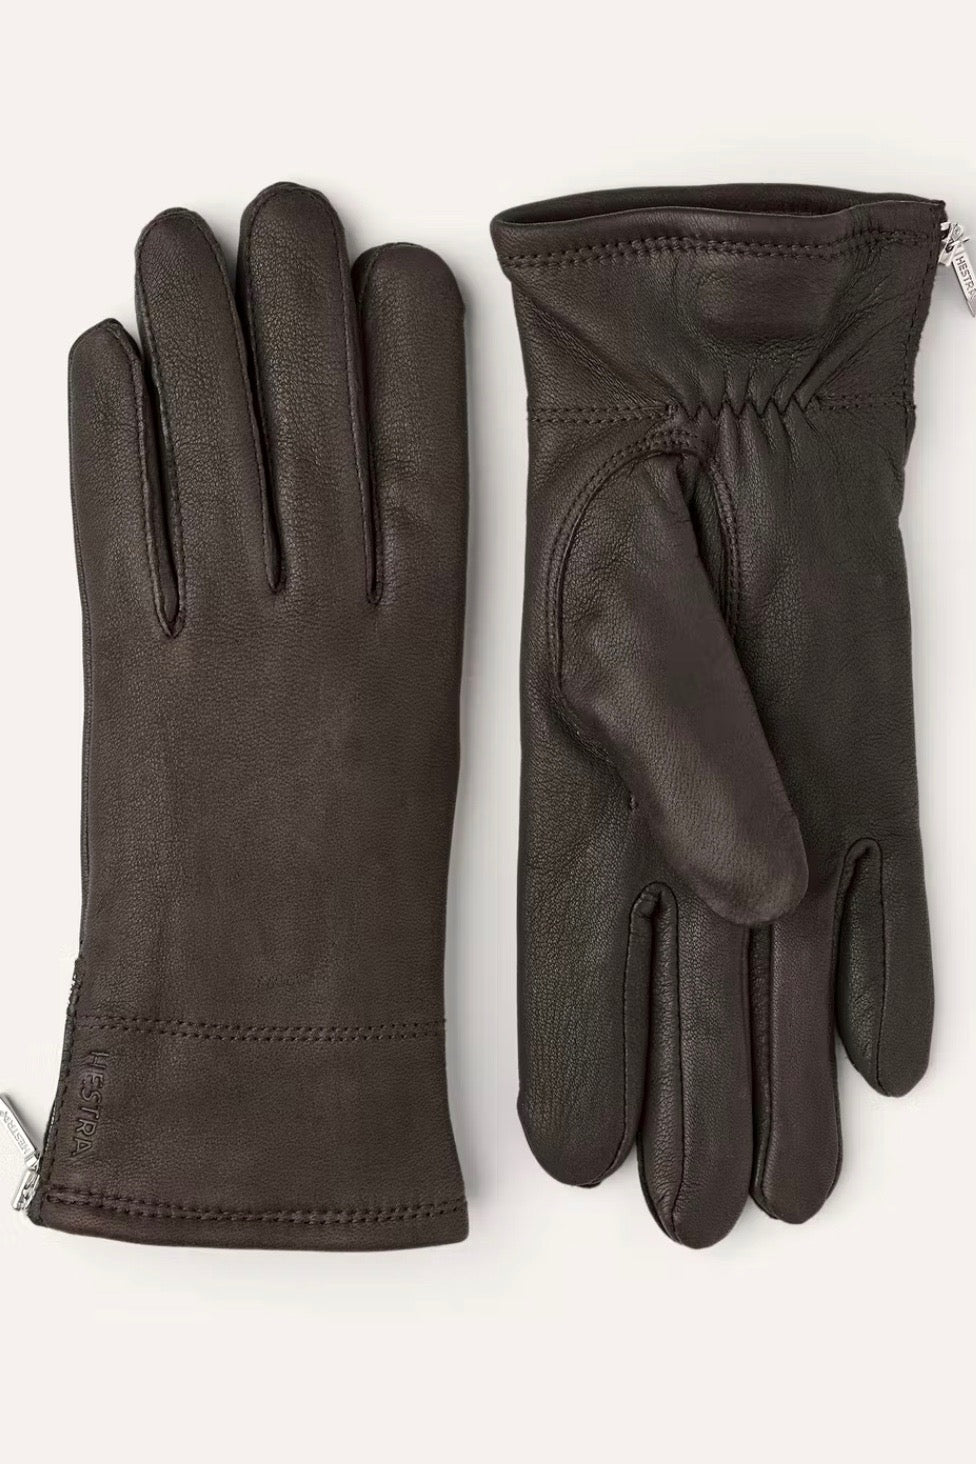 Dunkelbraune Handschuhe aus Leder von Hestra Schweden